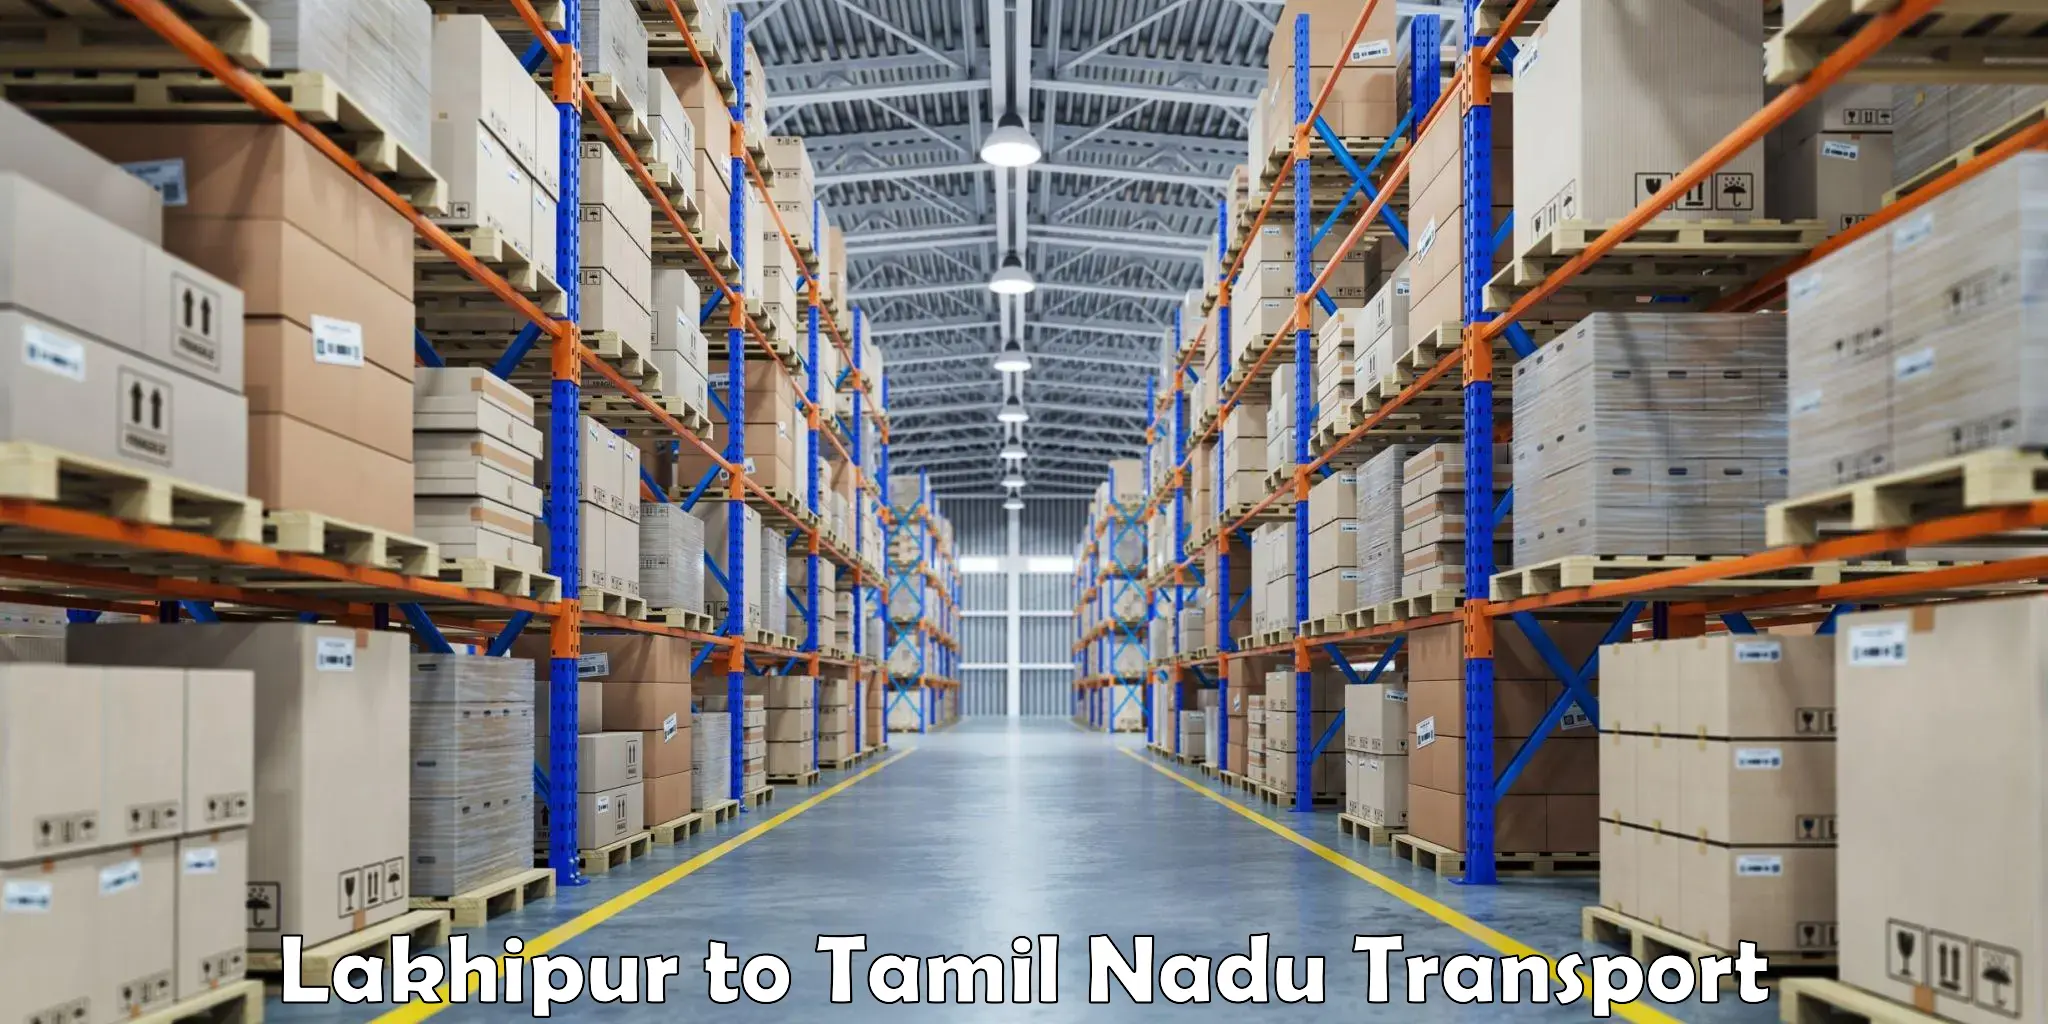 Road transport online services Lakhipur to Tamil Nadu